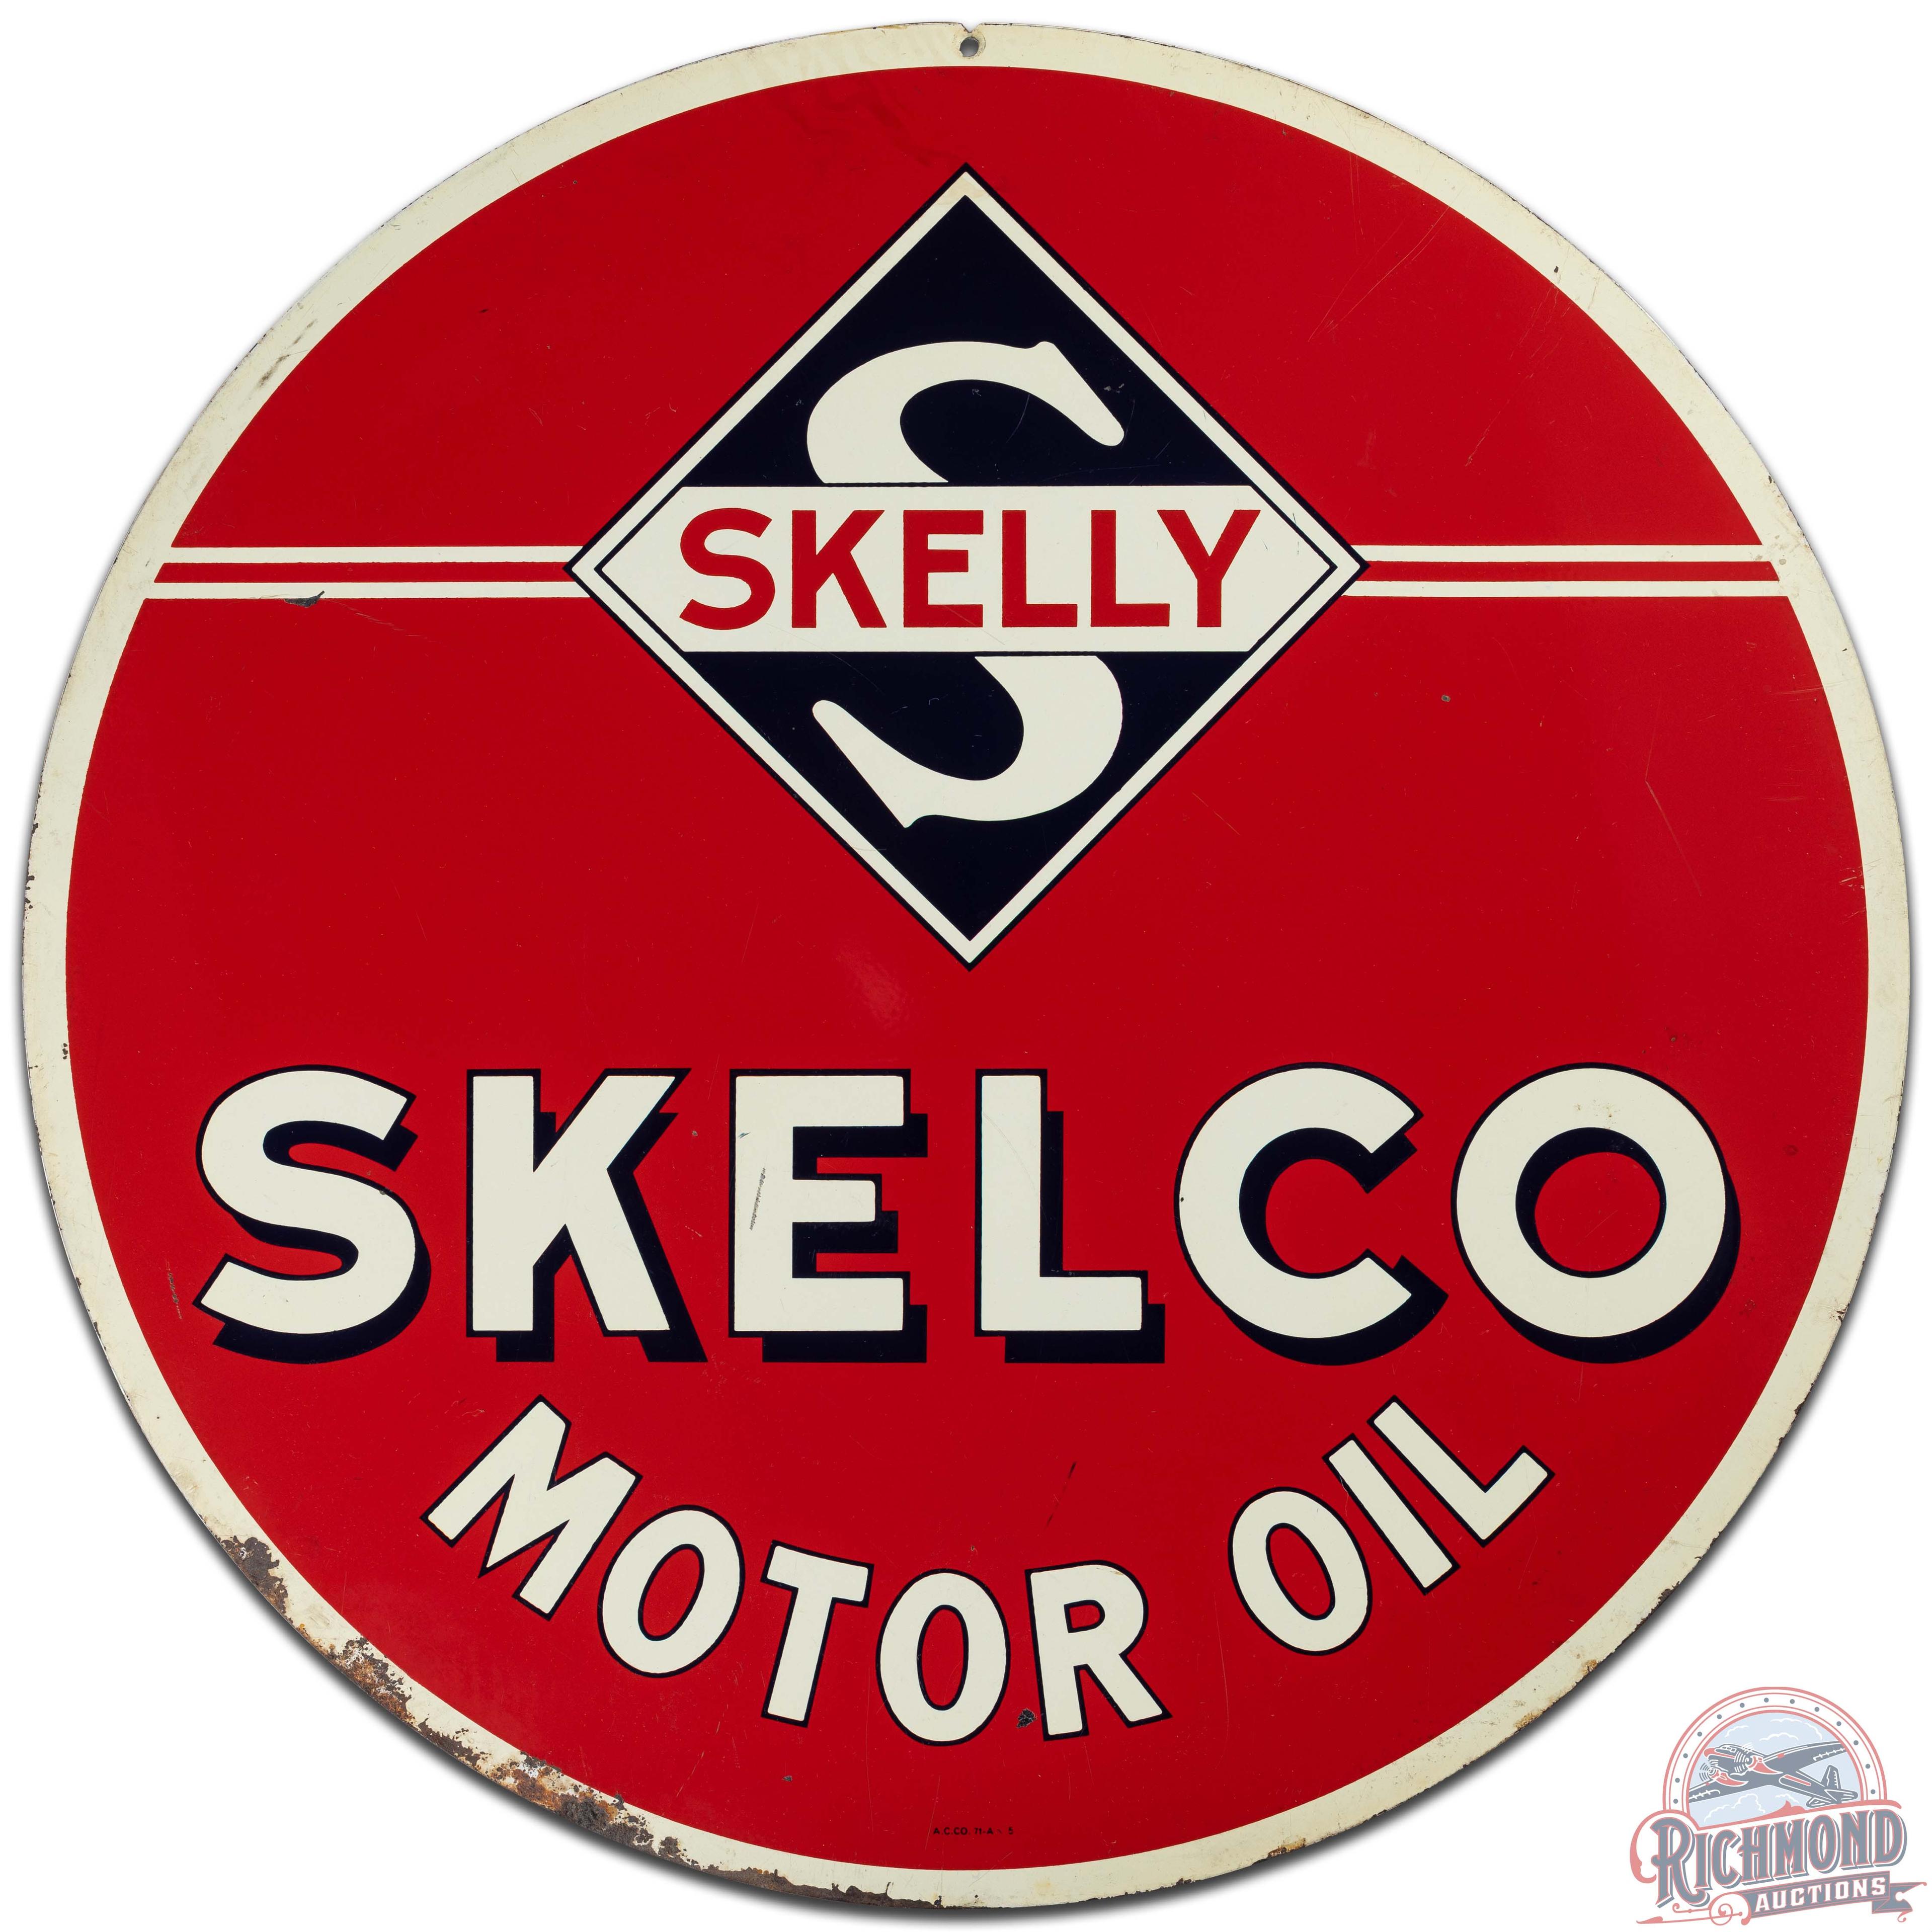 Skelly Tagolene Skelco Motor Oil 30" DS Tin Sign w/ Logo